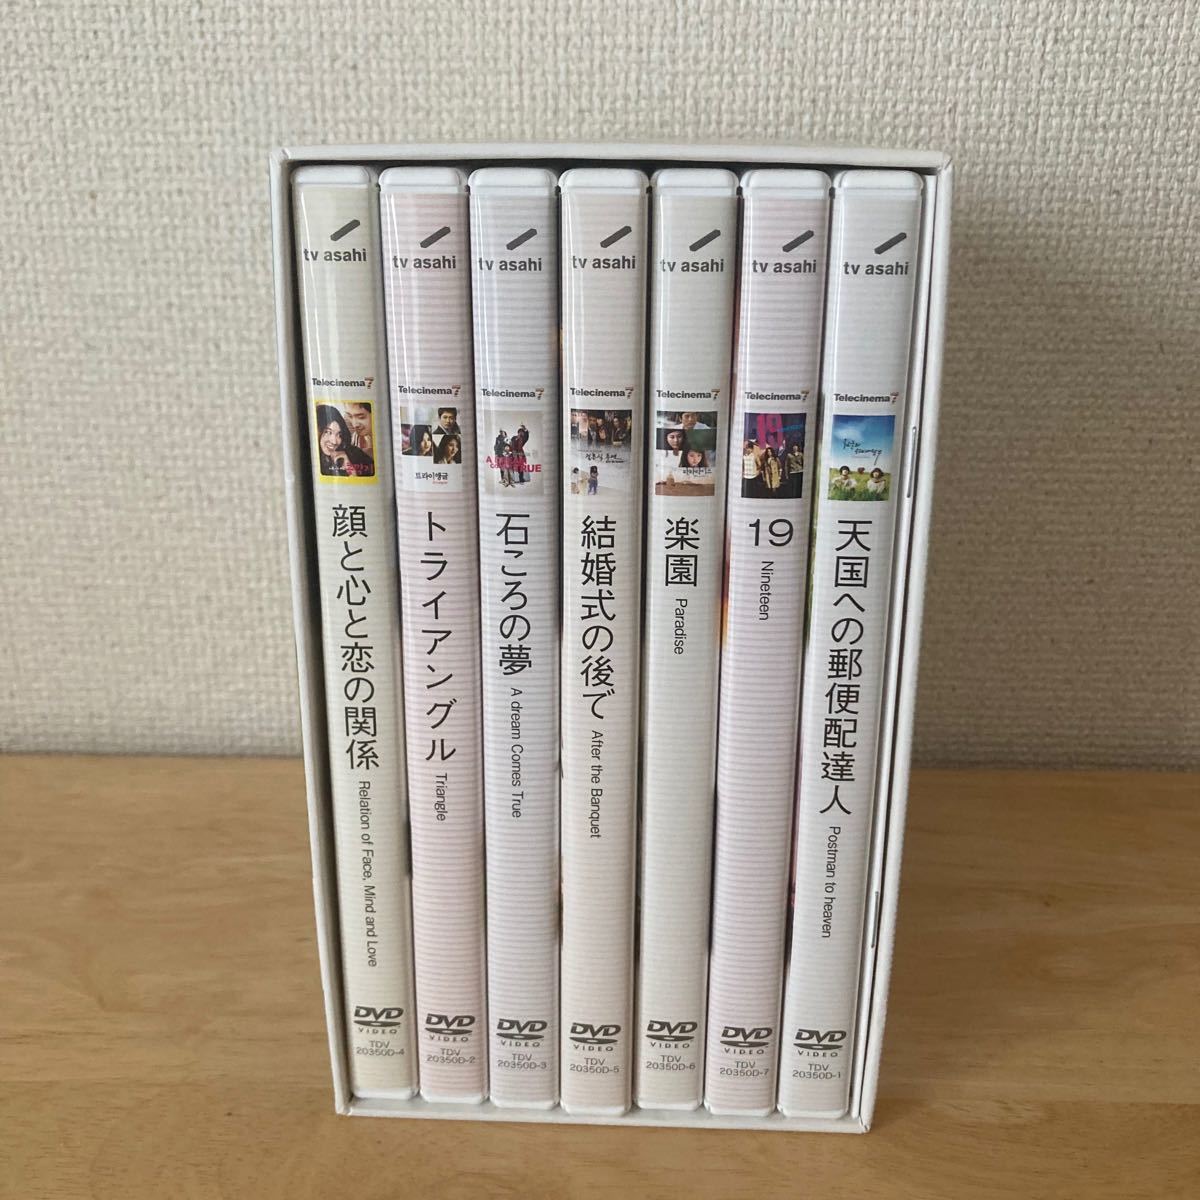 テレシネマ  DVD-BOX 天国への郵便配達人 7作品収録 初回限定盤